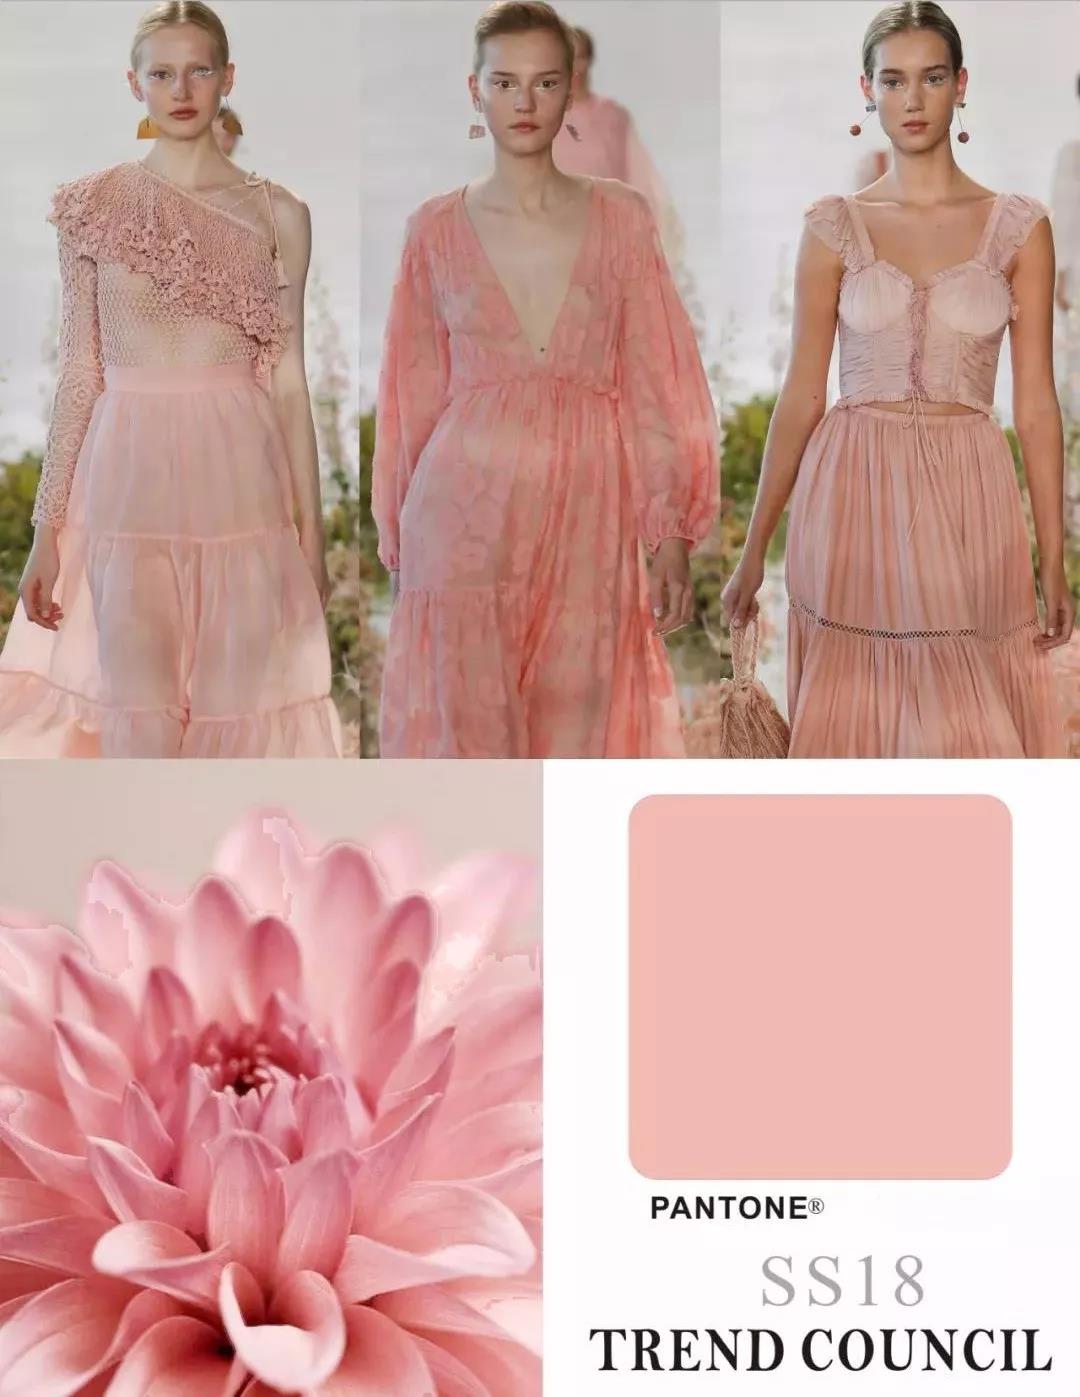 一条粉色丝绒百褶裙或者香槟粉的直筒裤,都能给素色的一身look增添一